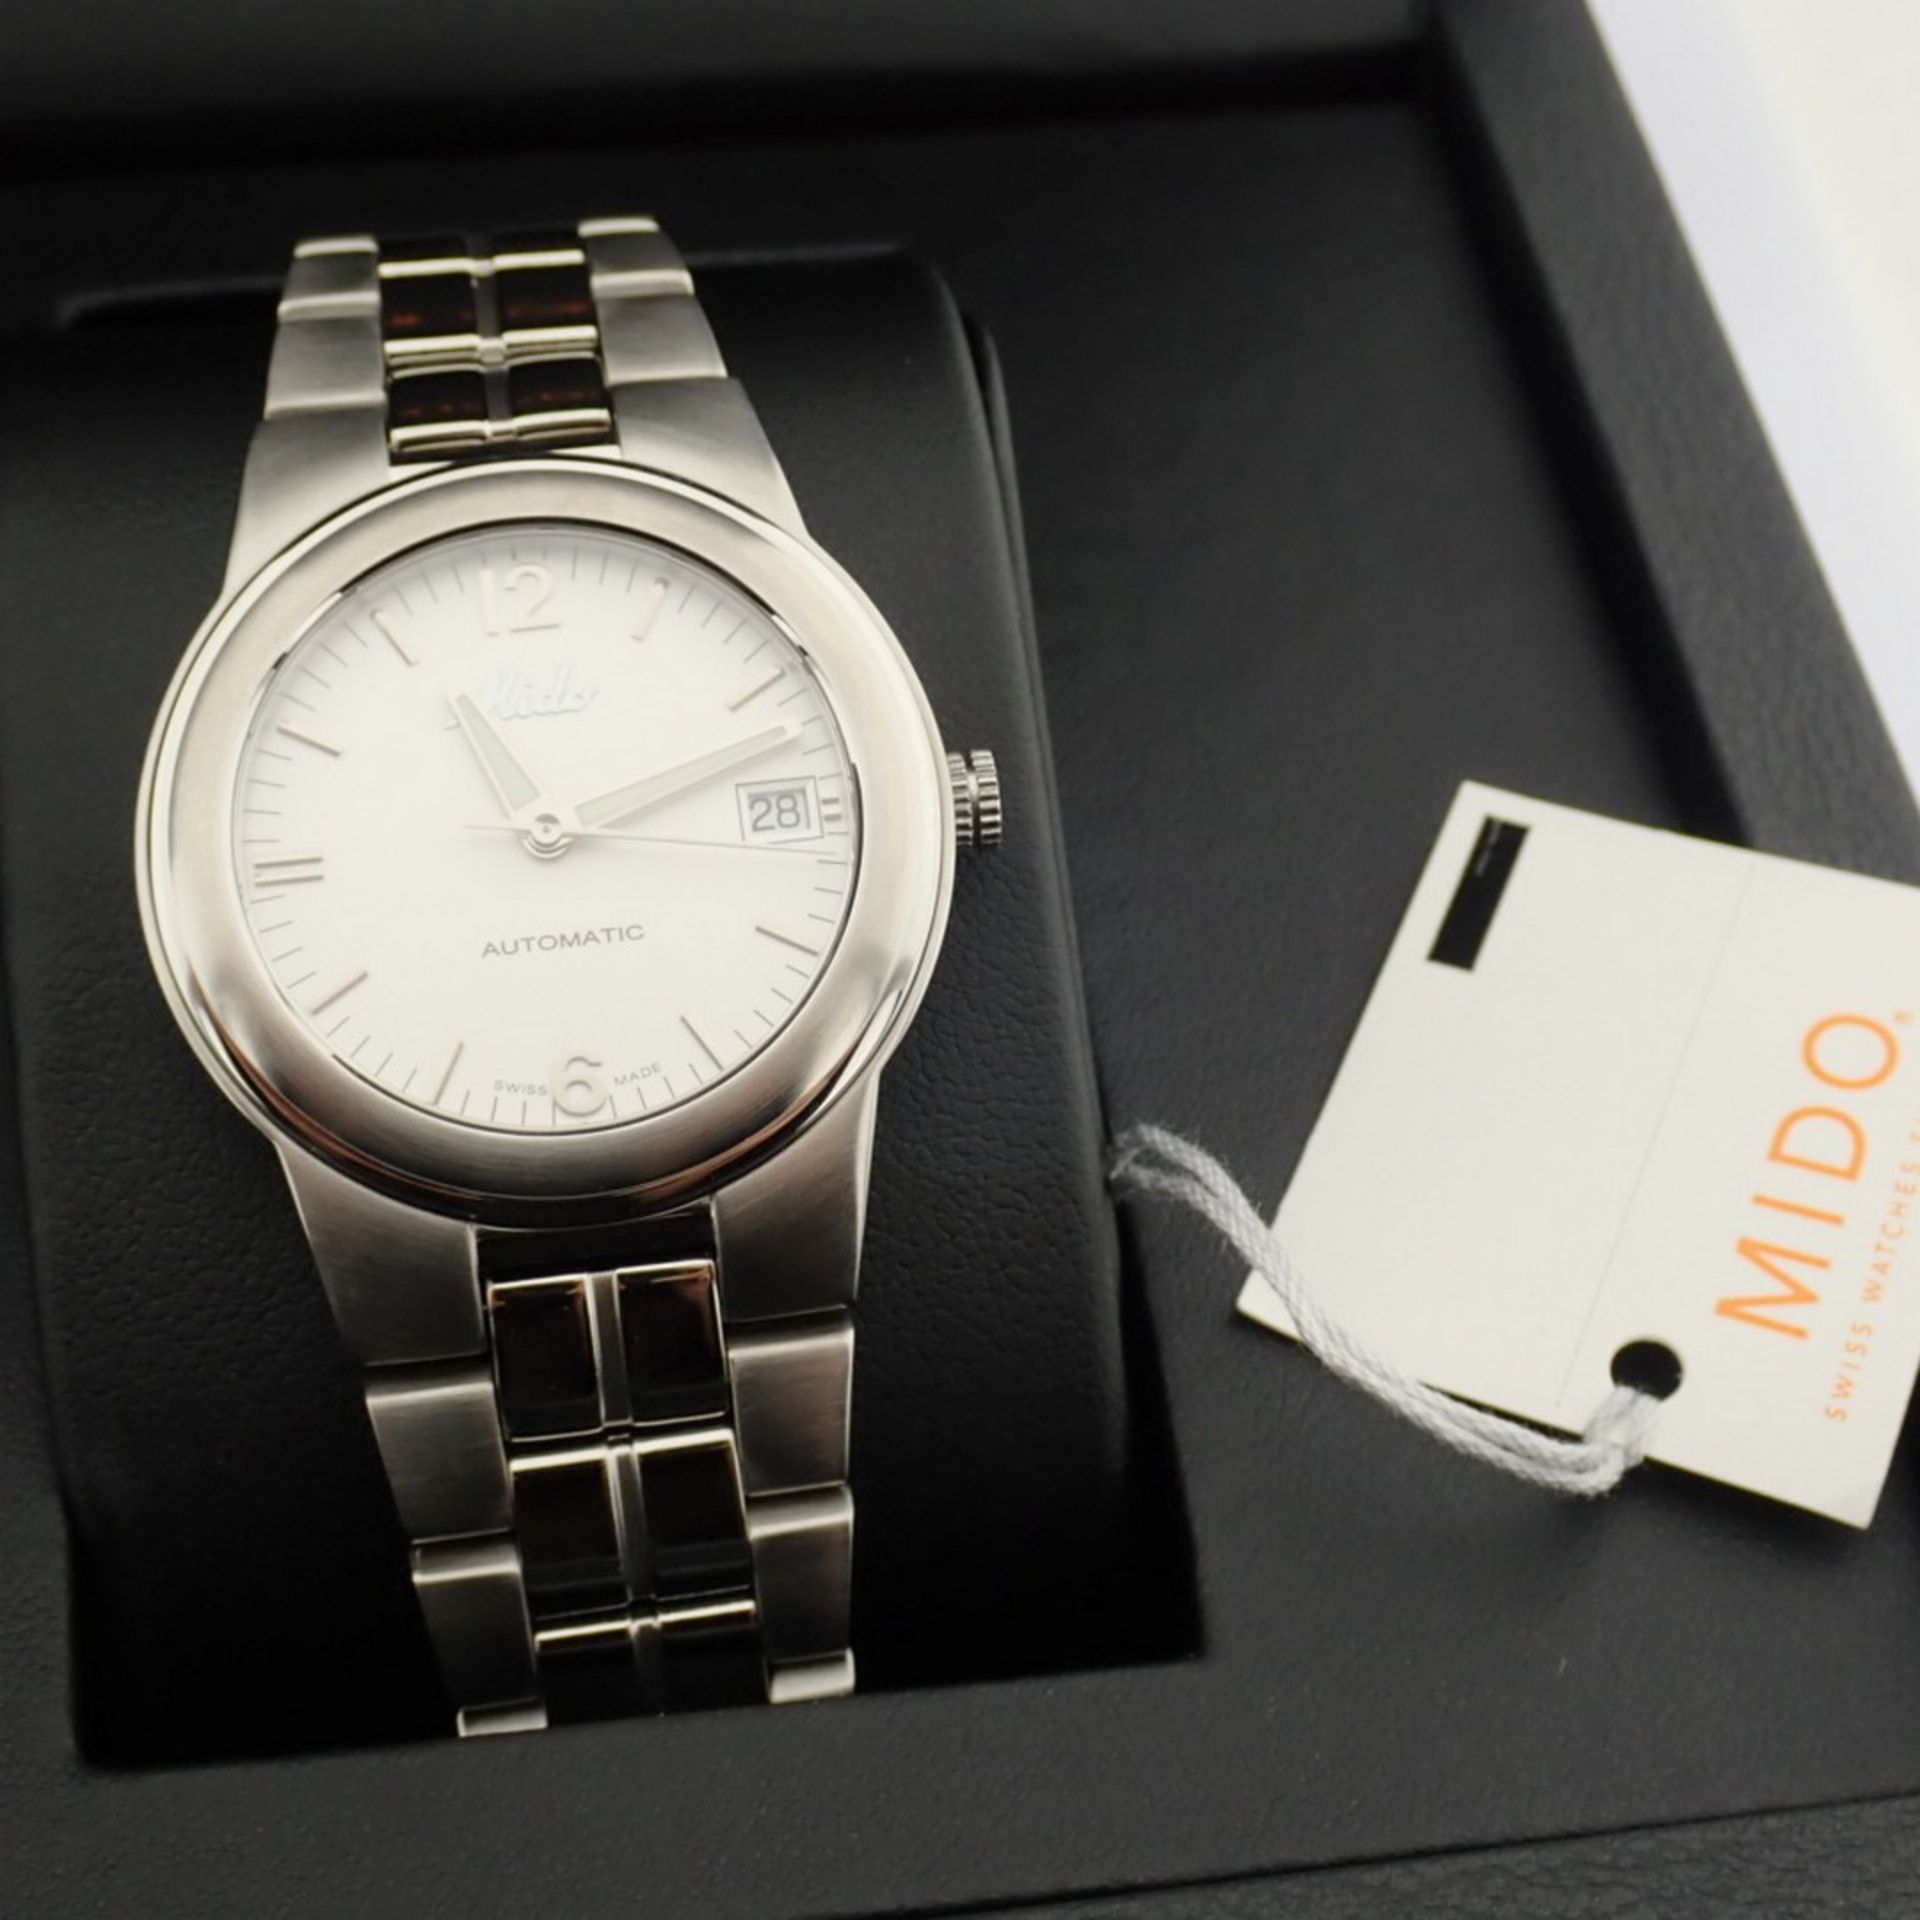 Mido / Ocean Star Aquadura (Brand New) - Gentlemen's Steel Wristwatch - Image 3 of 12